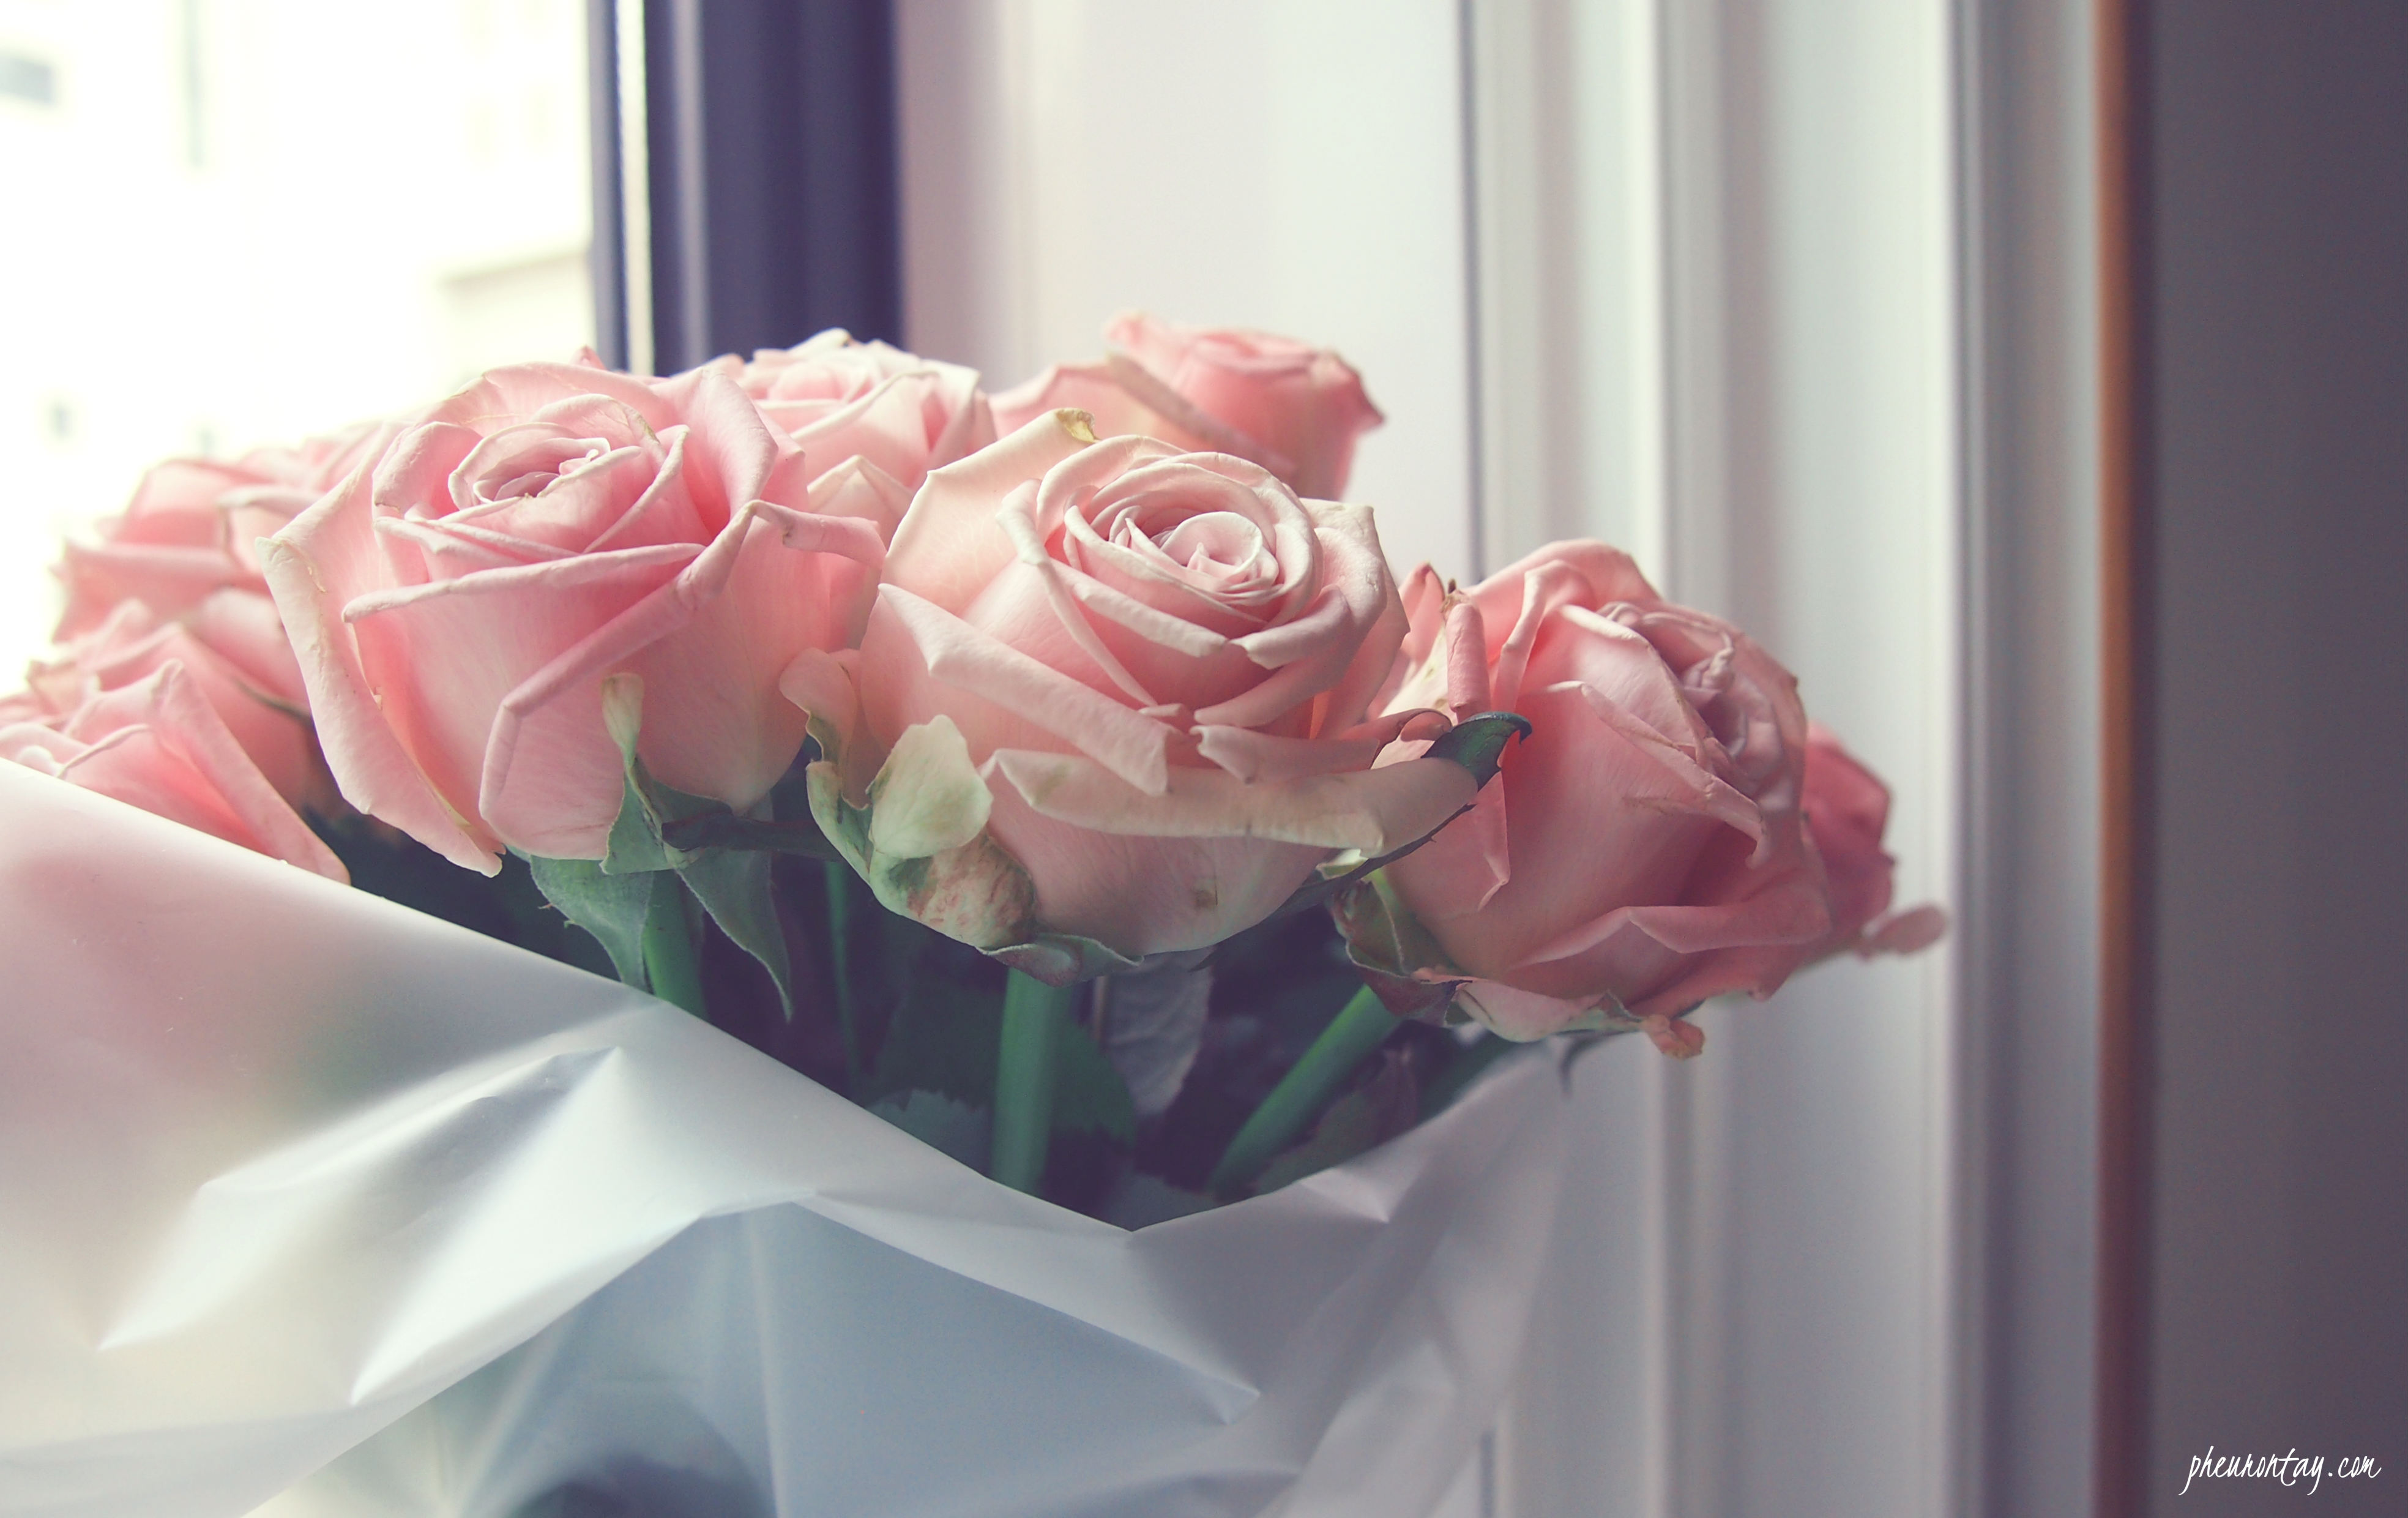 Roses Bouquet Tumblr